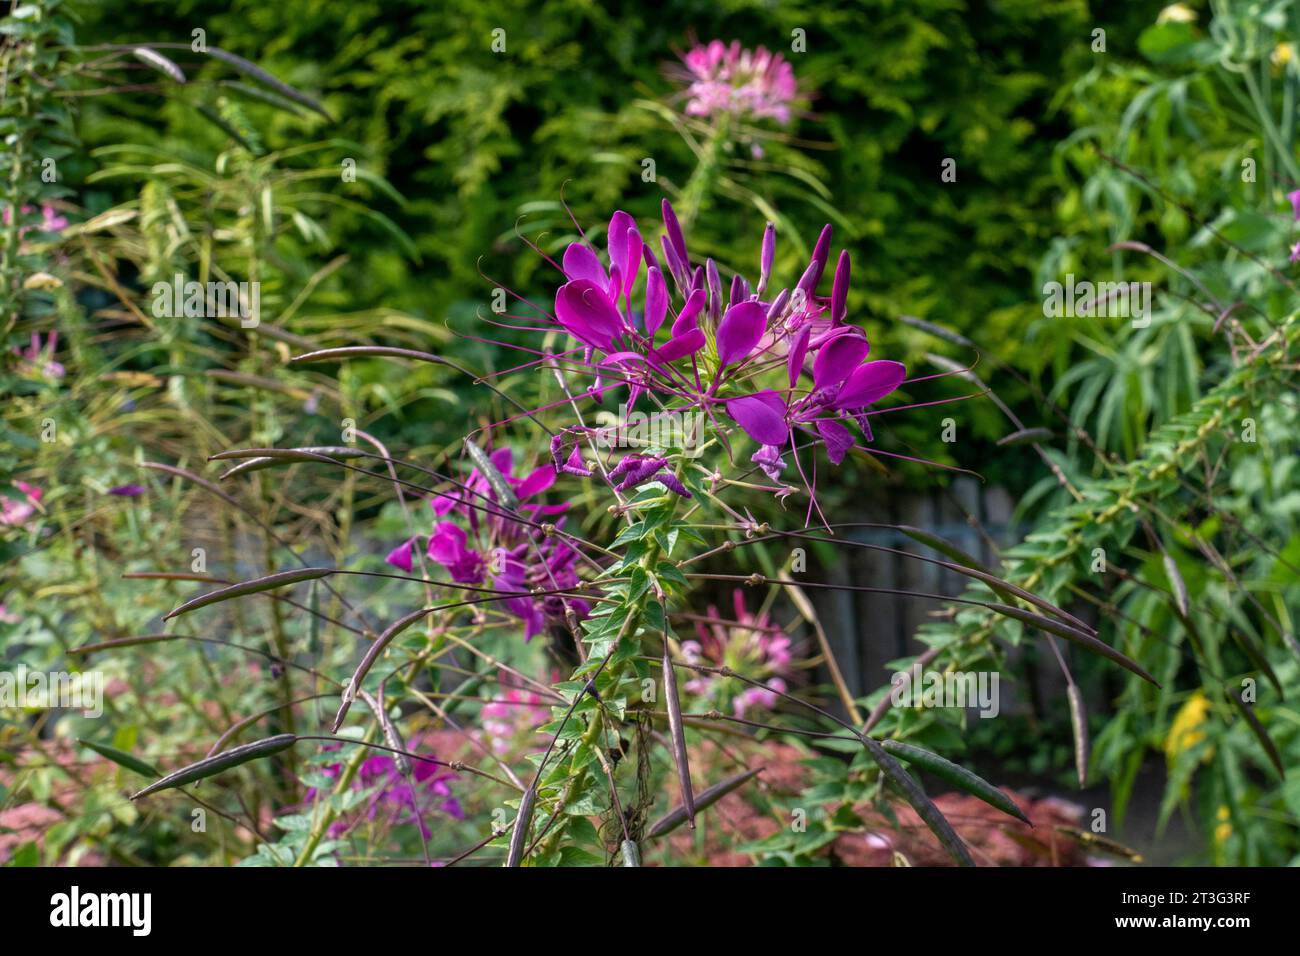 lila Spinnenblume Blüte, Cleome spinosa, mit Cannabis ähnlichem Duft und Aussehen Stock Photo